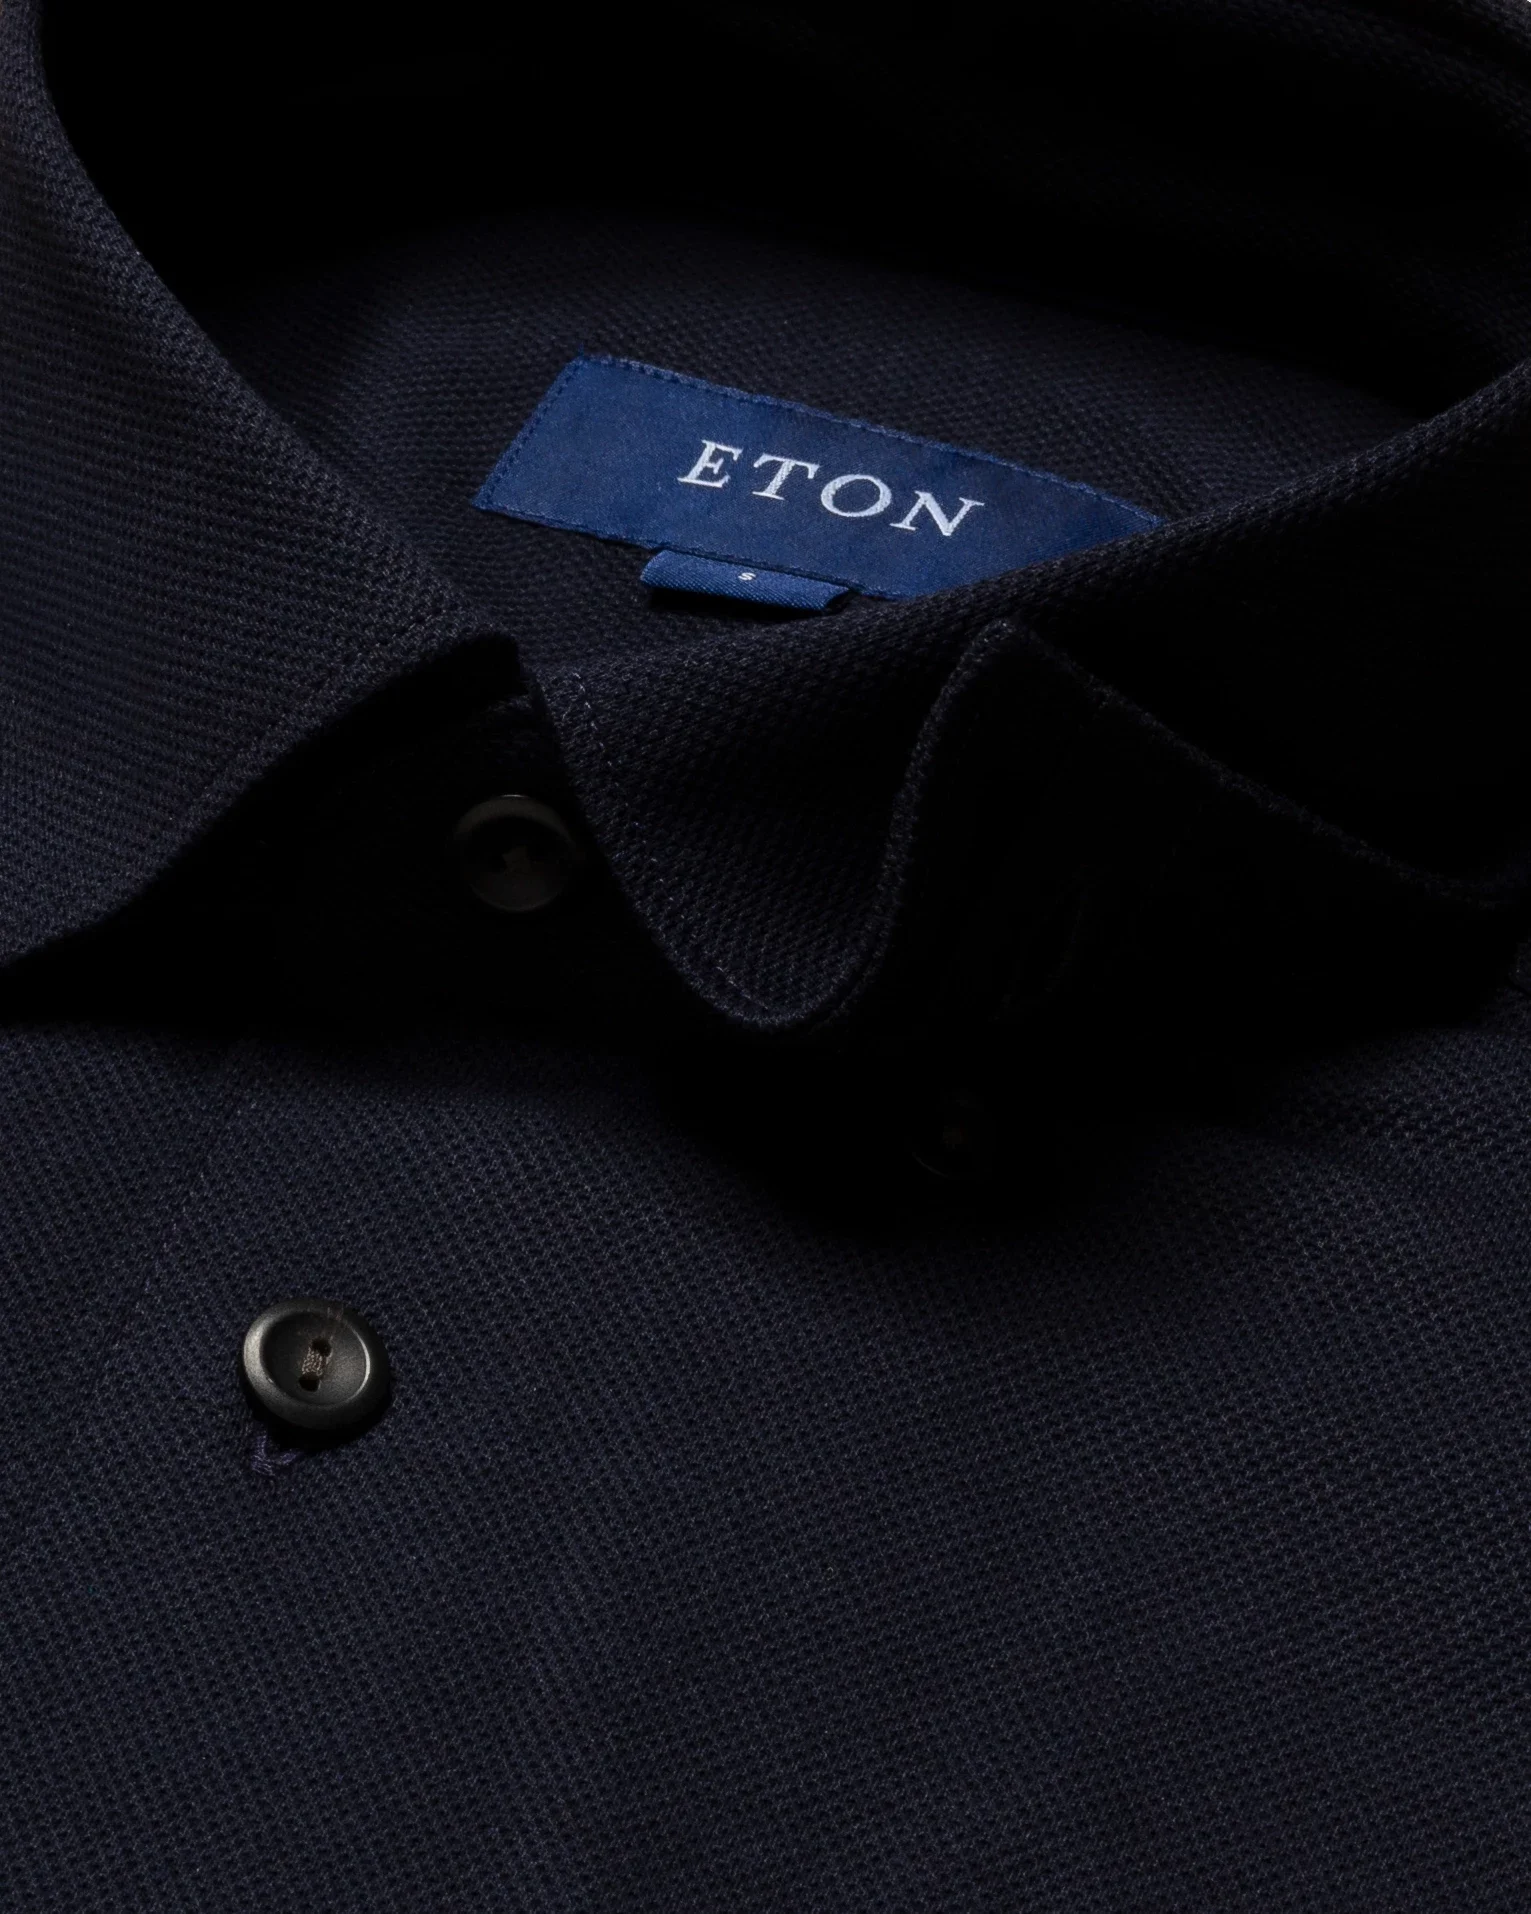 Eton - navy pique shirt long sleeved